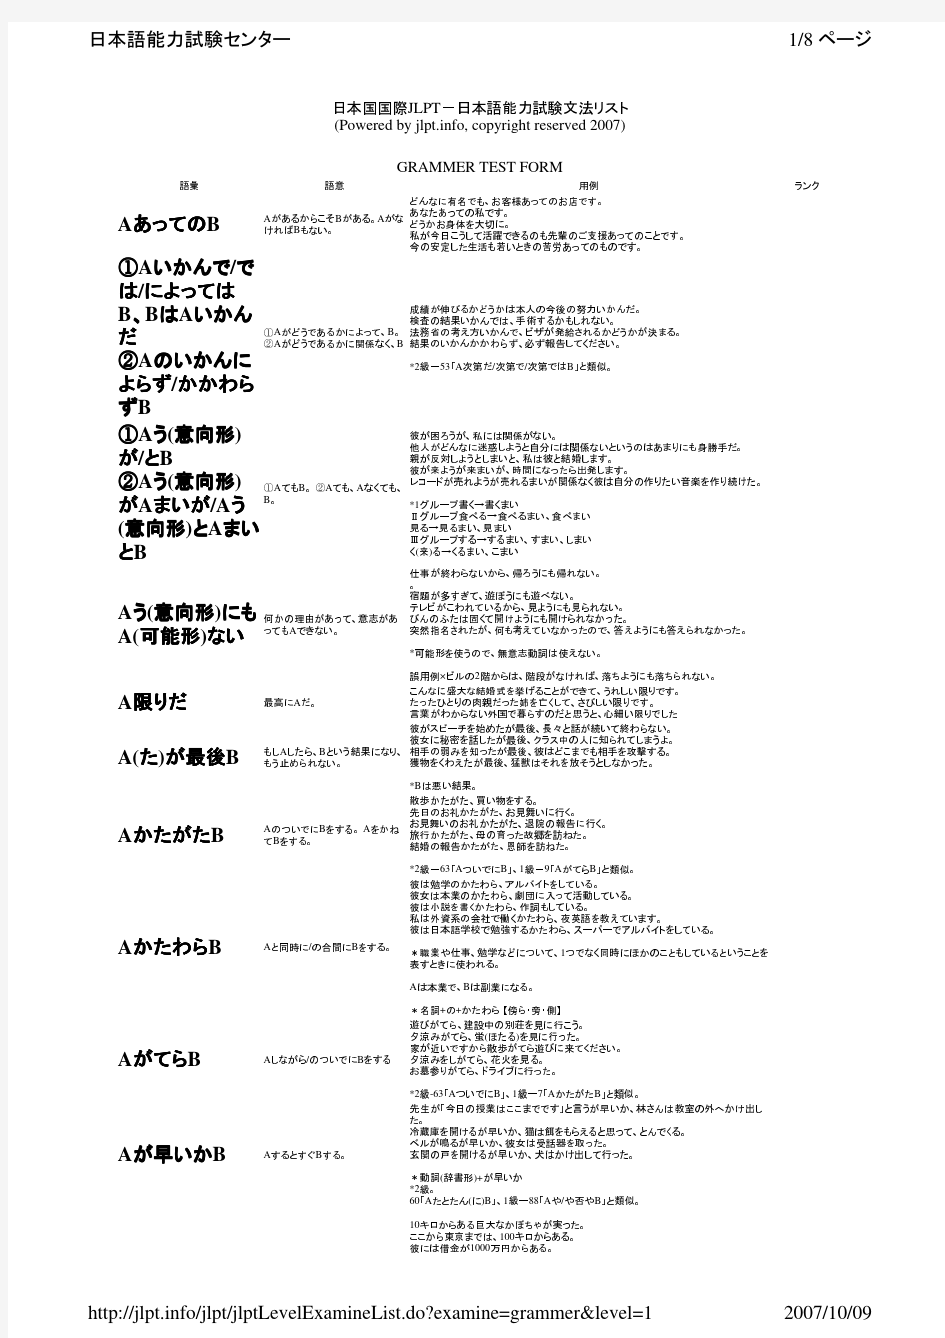 日语一级语法总览(日语能力考试中心官方资料)